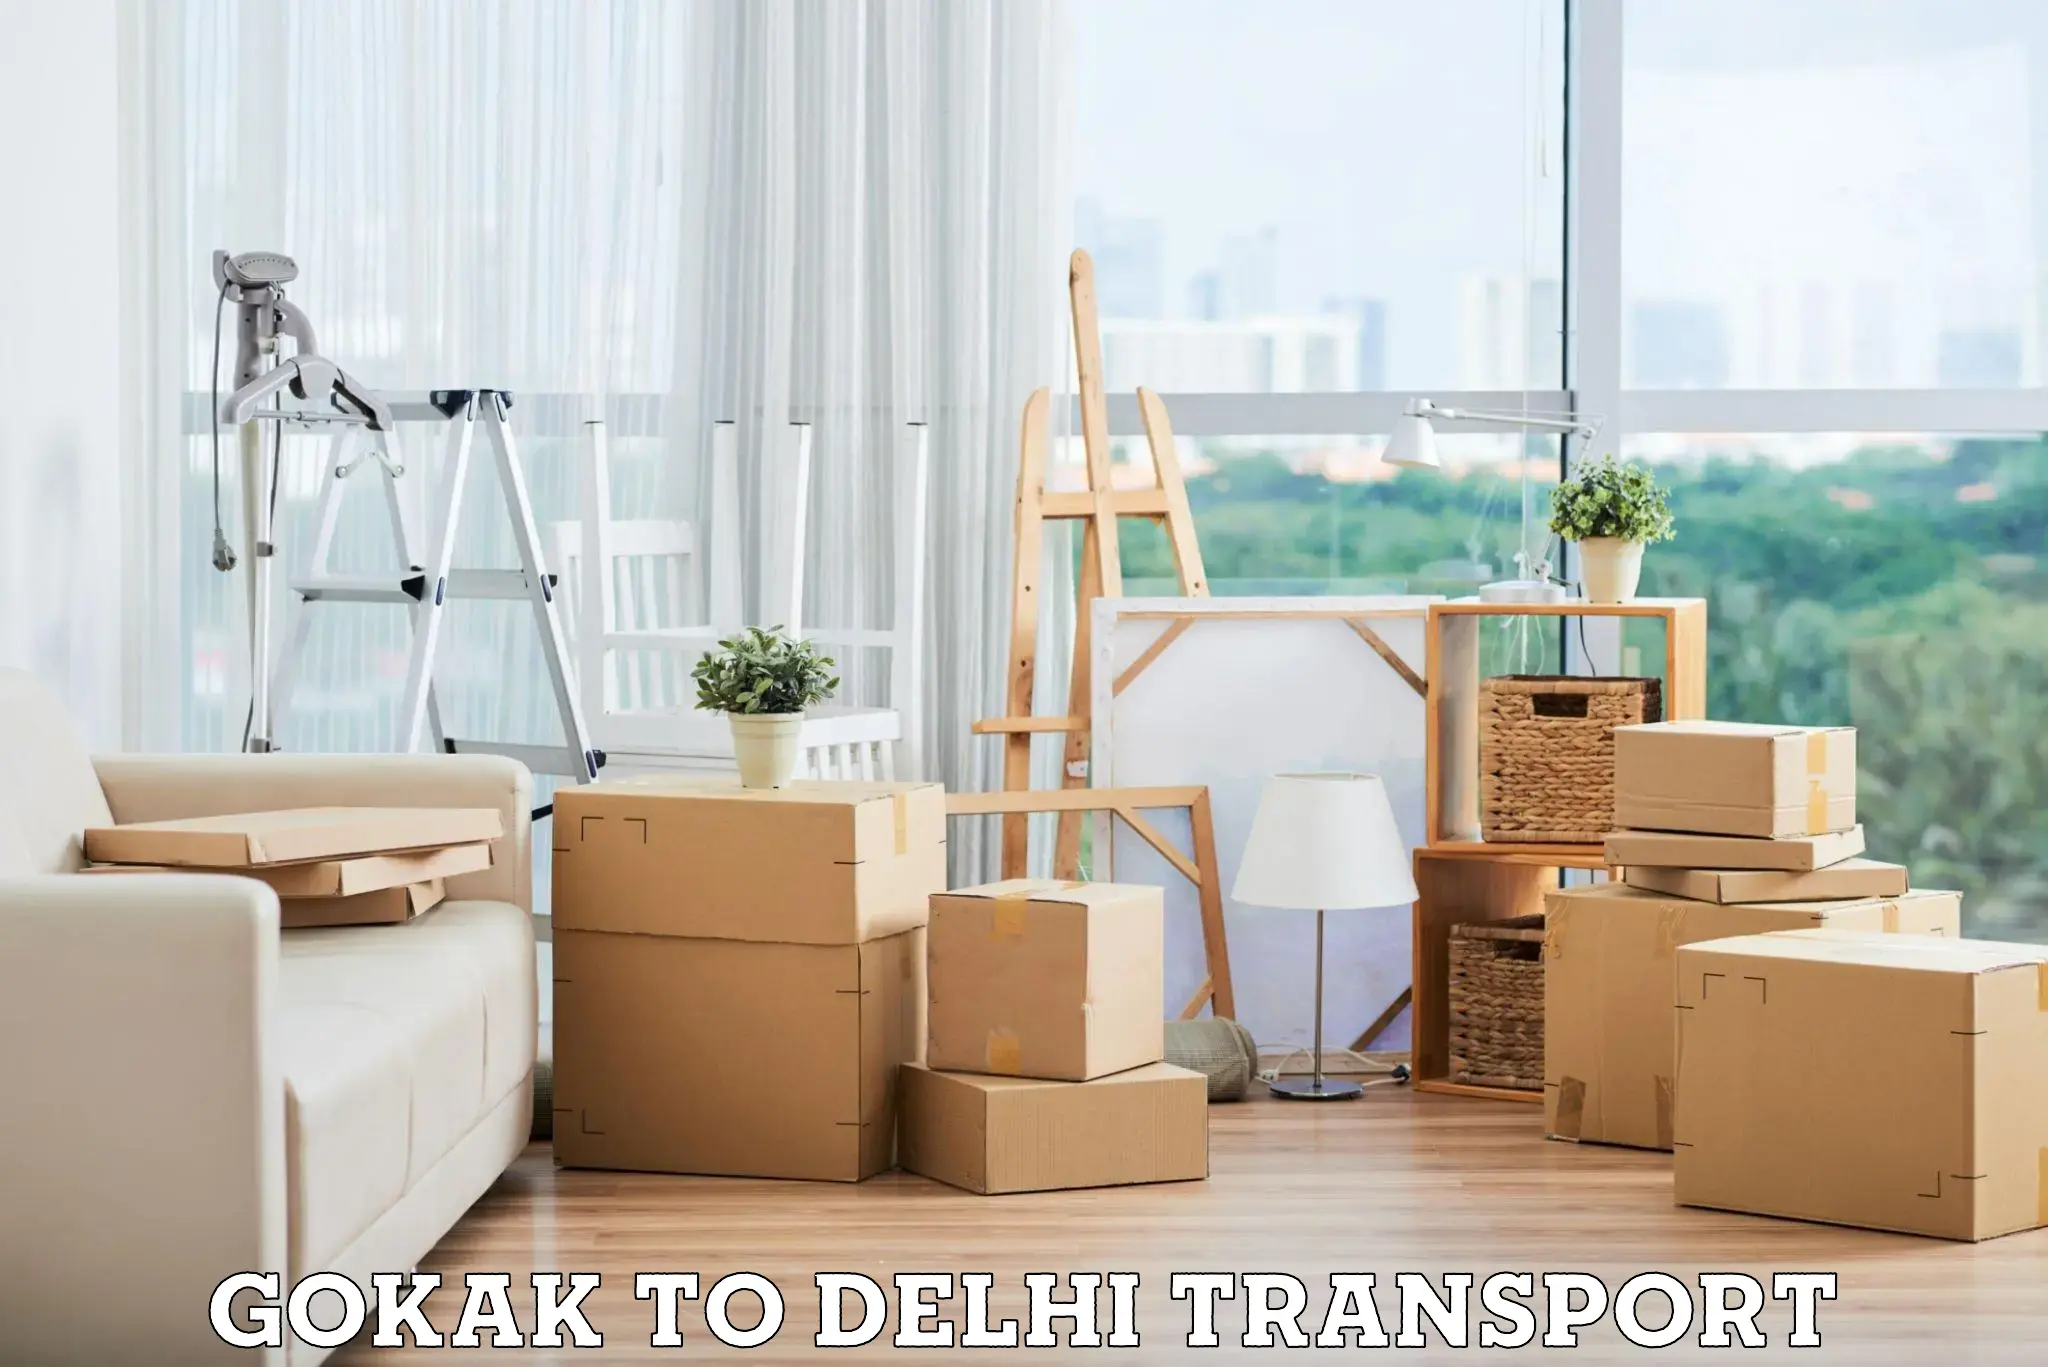 Furniture transport service Gokak to Delhi Technological University DTU